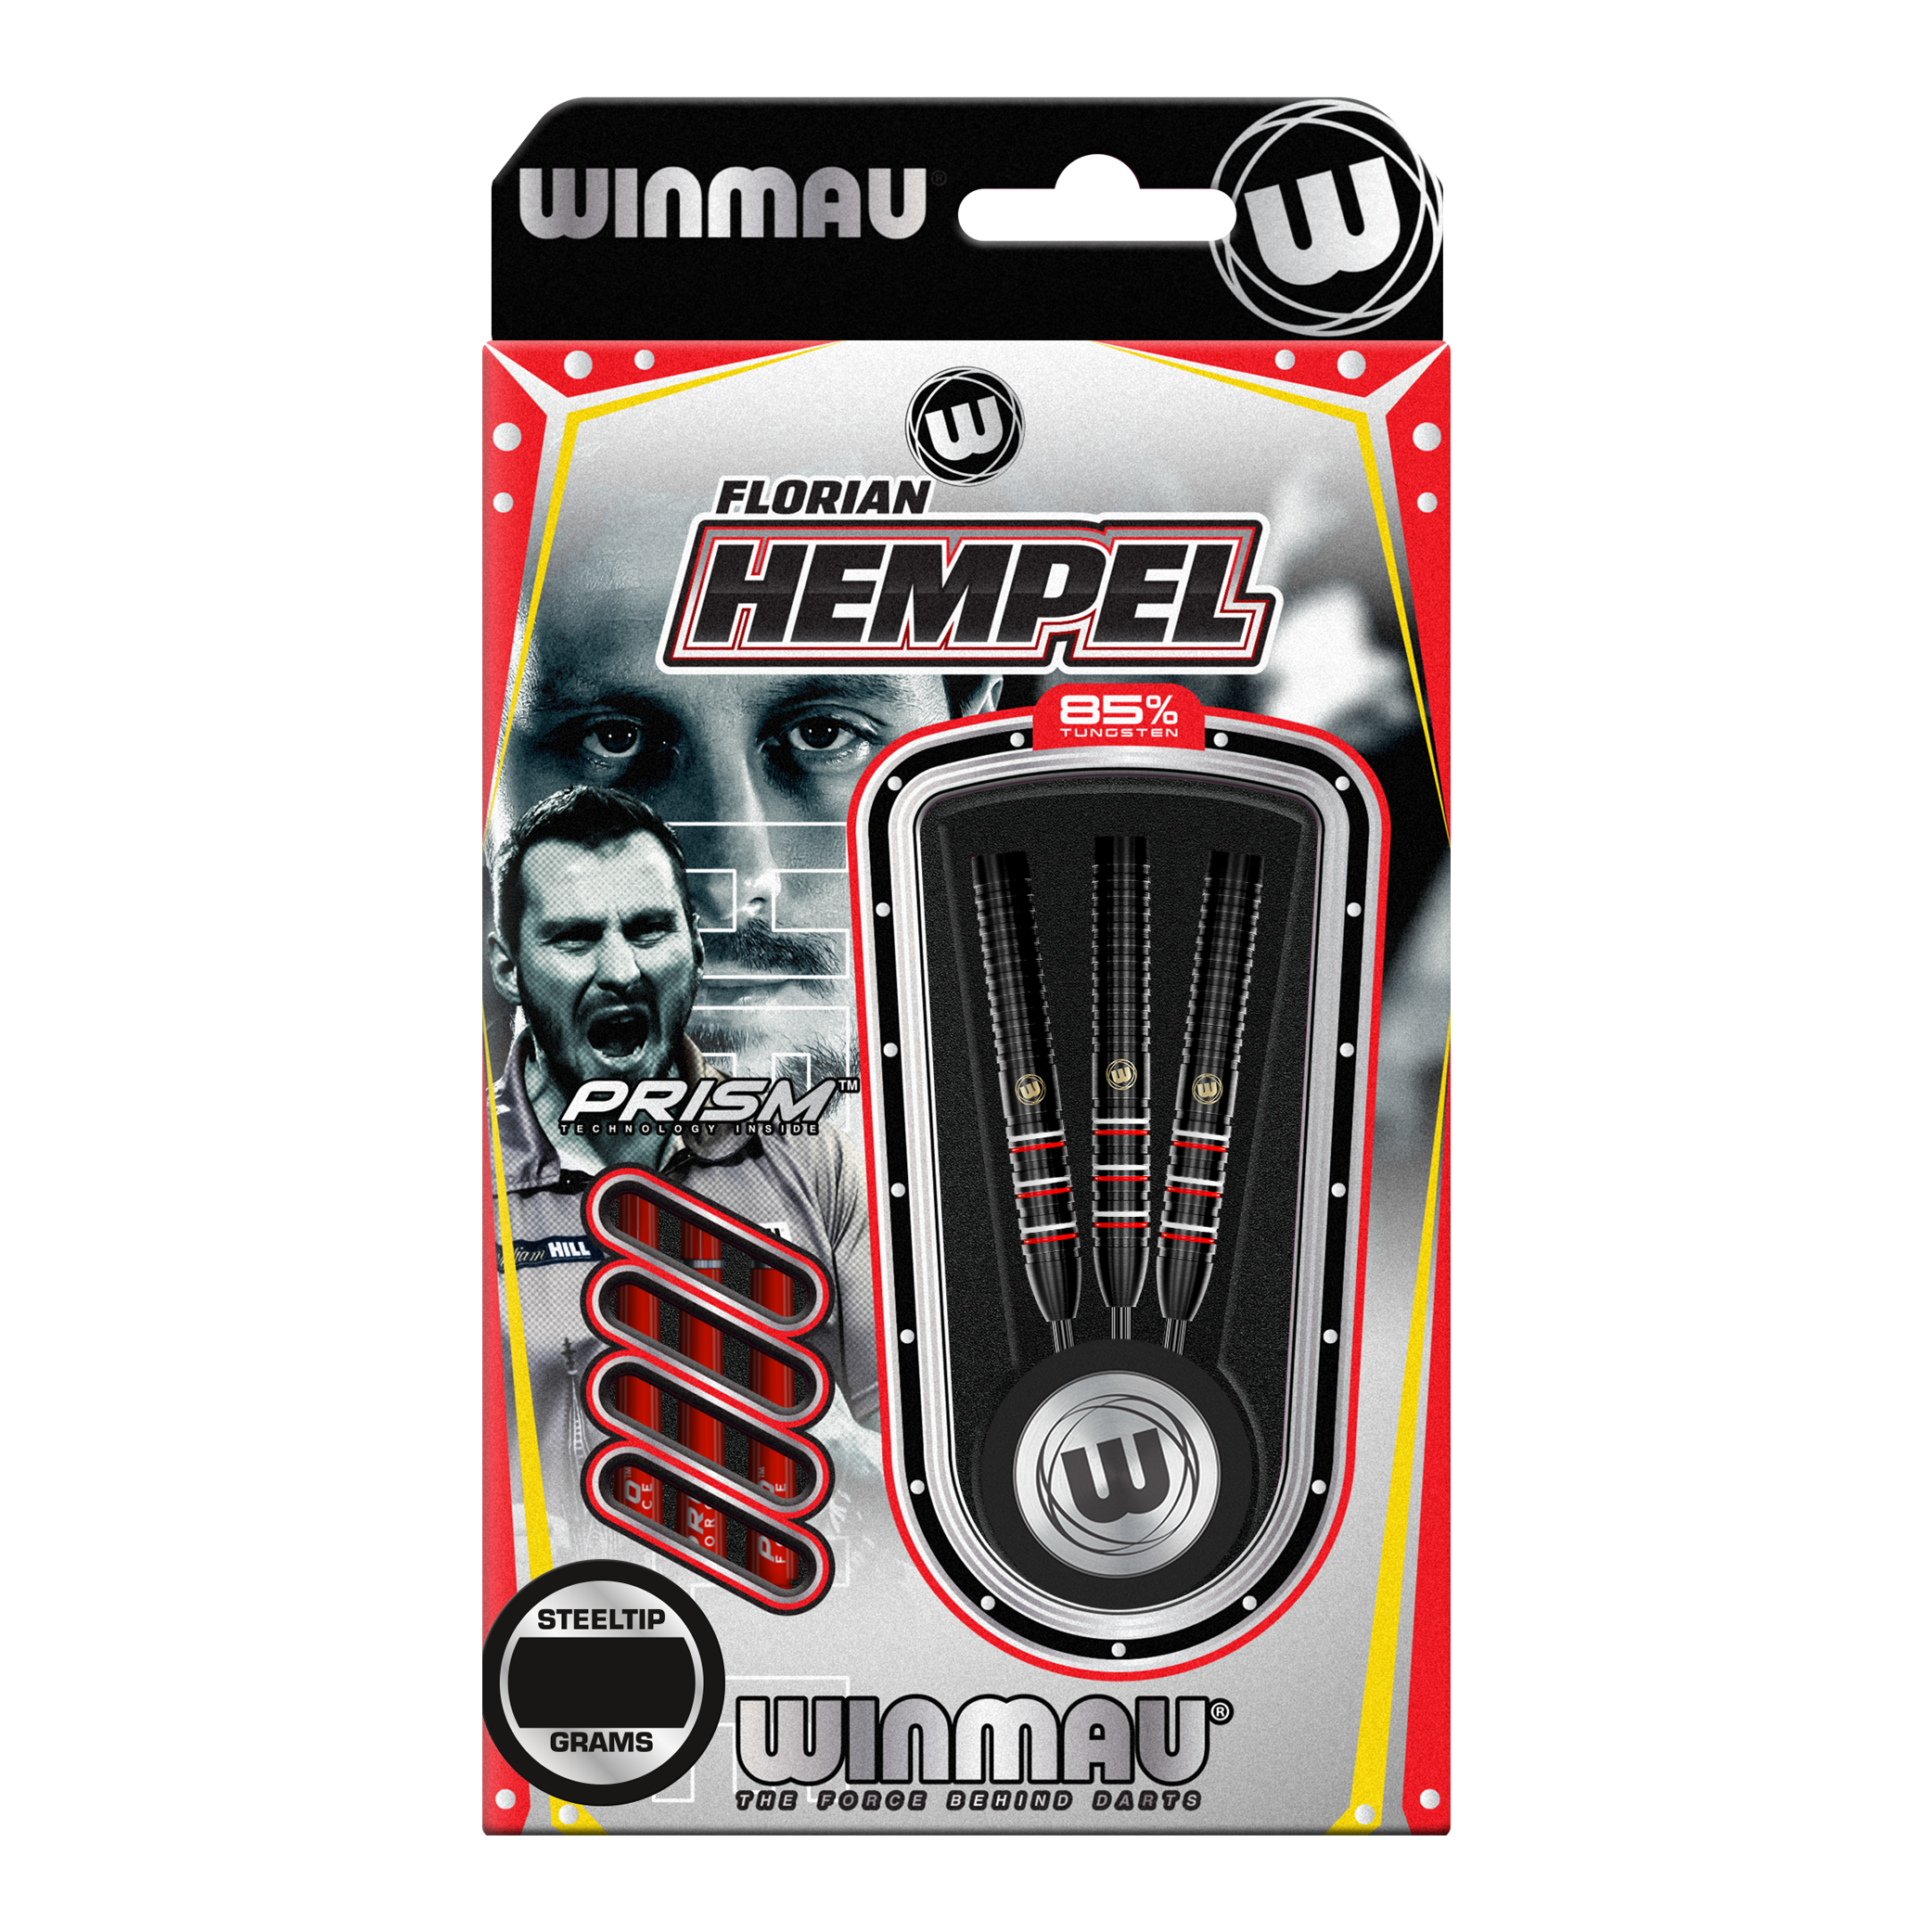 Dardos de acero Winmau Florian Hempel 85 Pro-Series